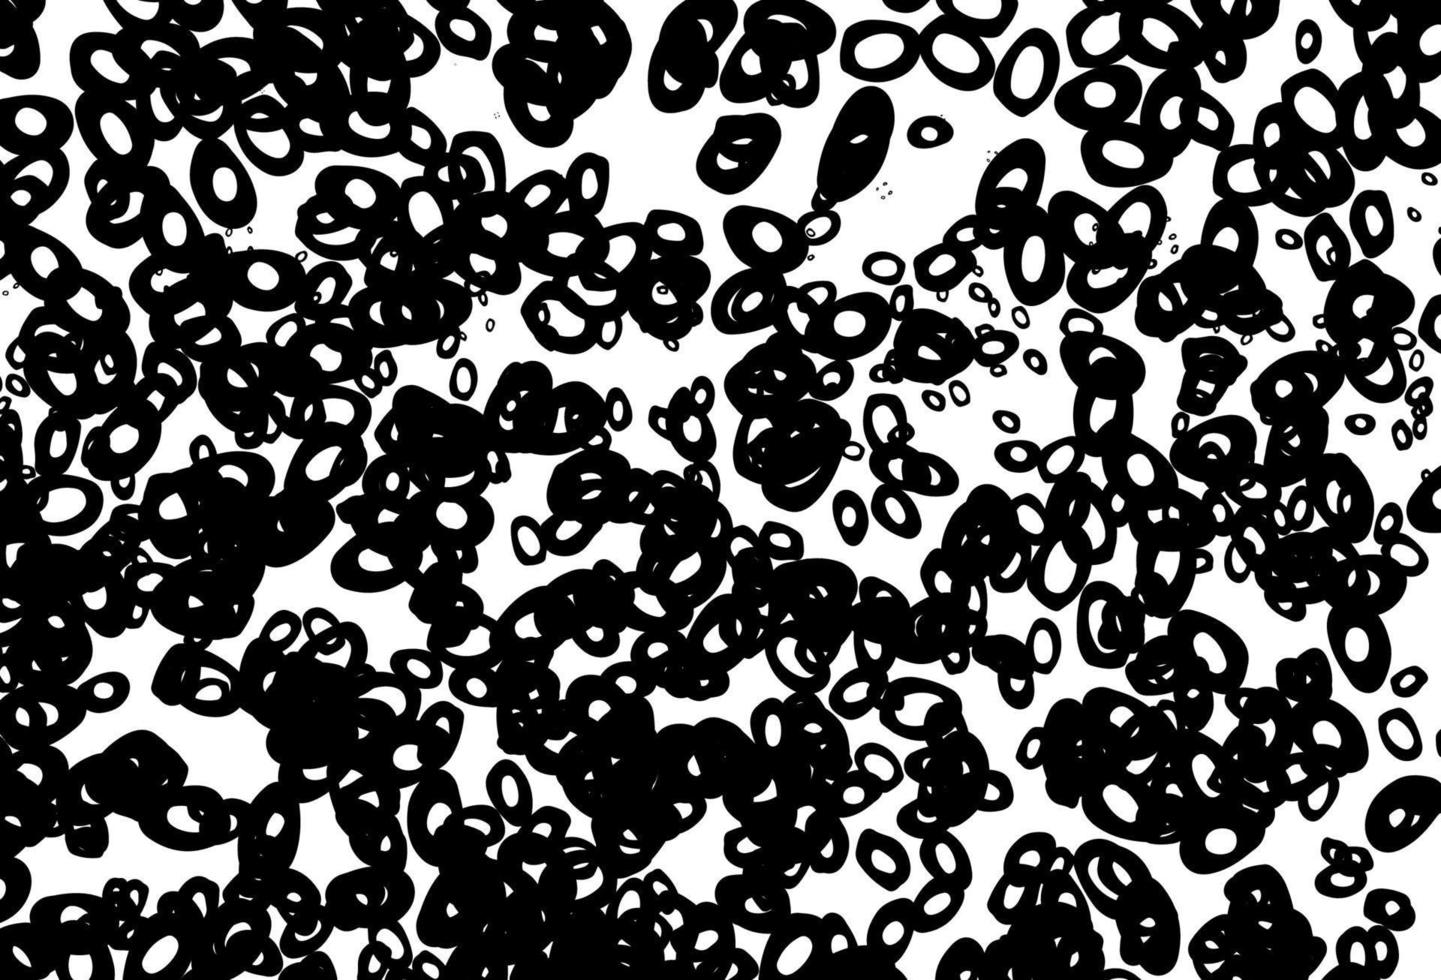 zwart-wit vectordekking met vlekken. vector